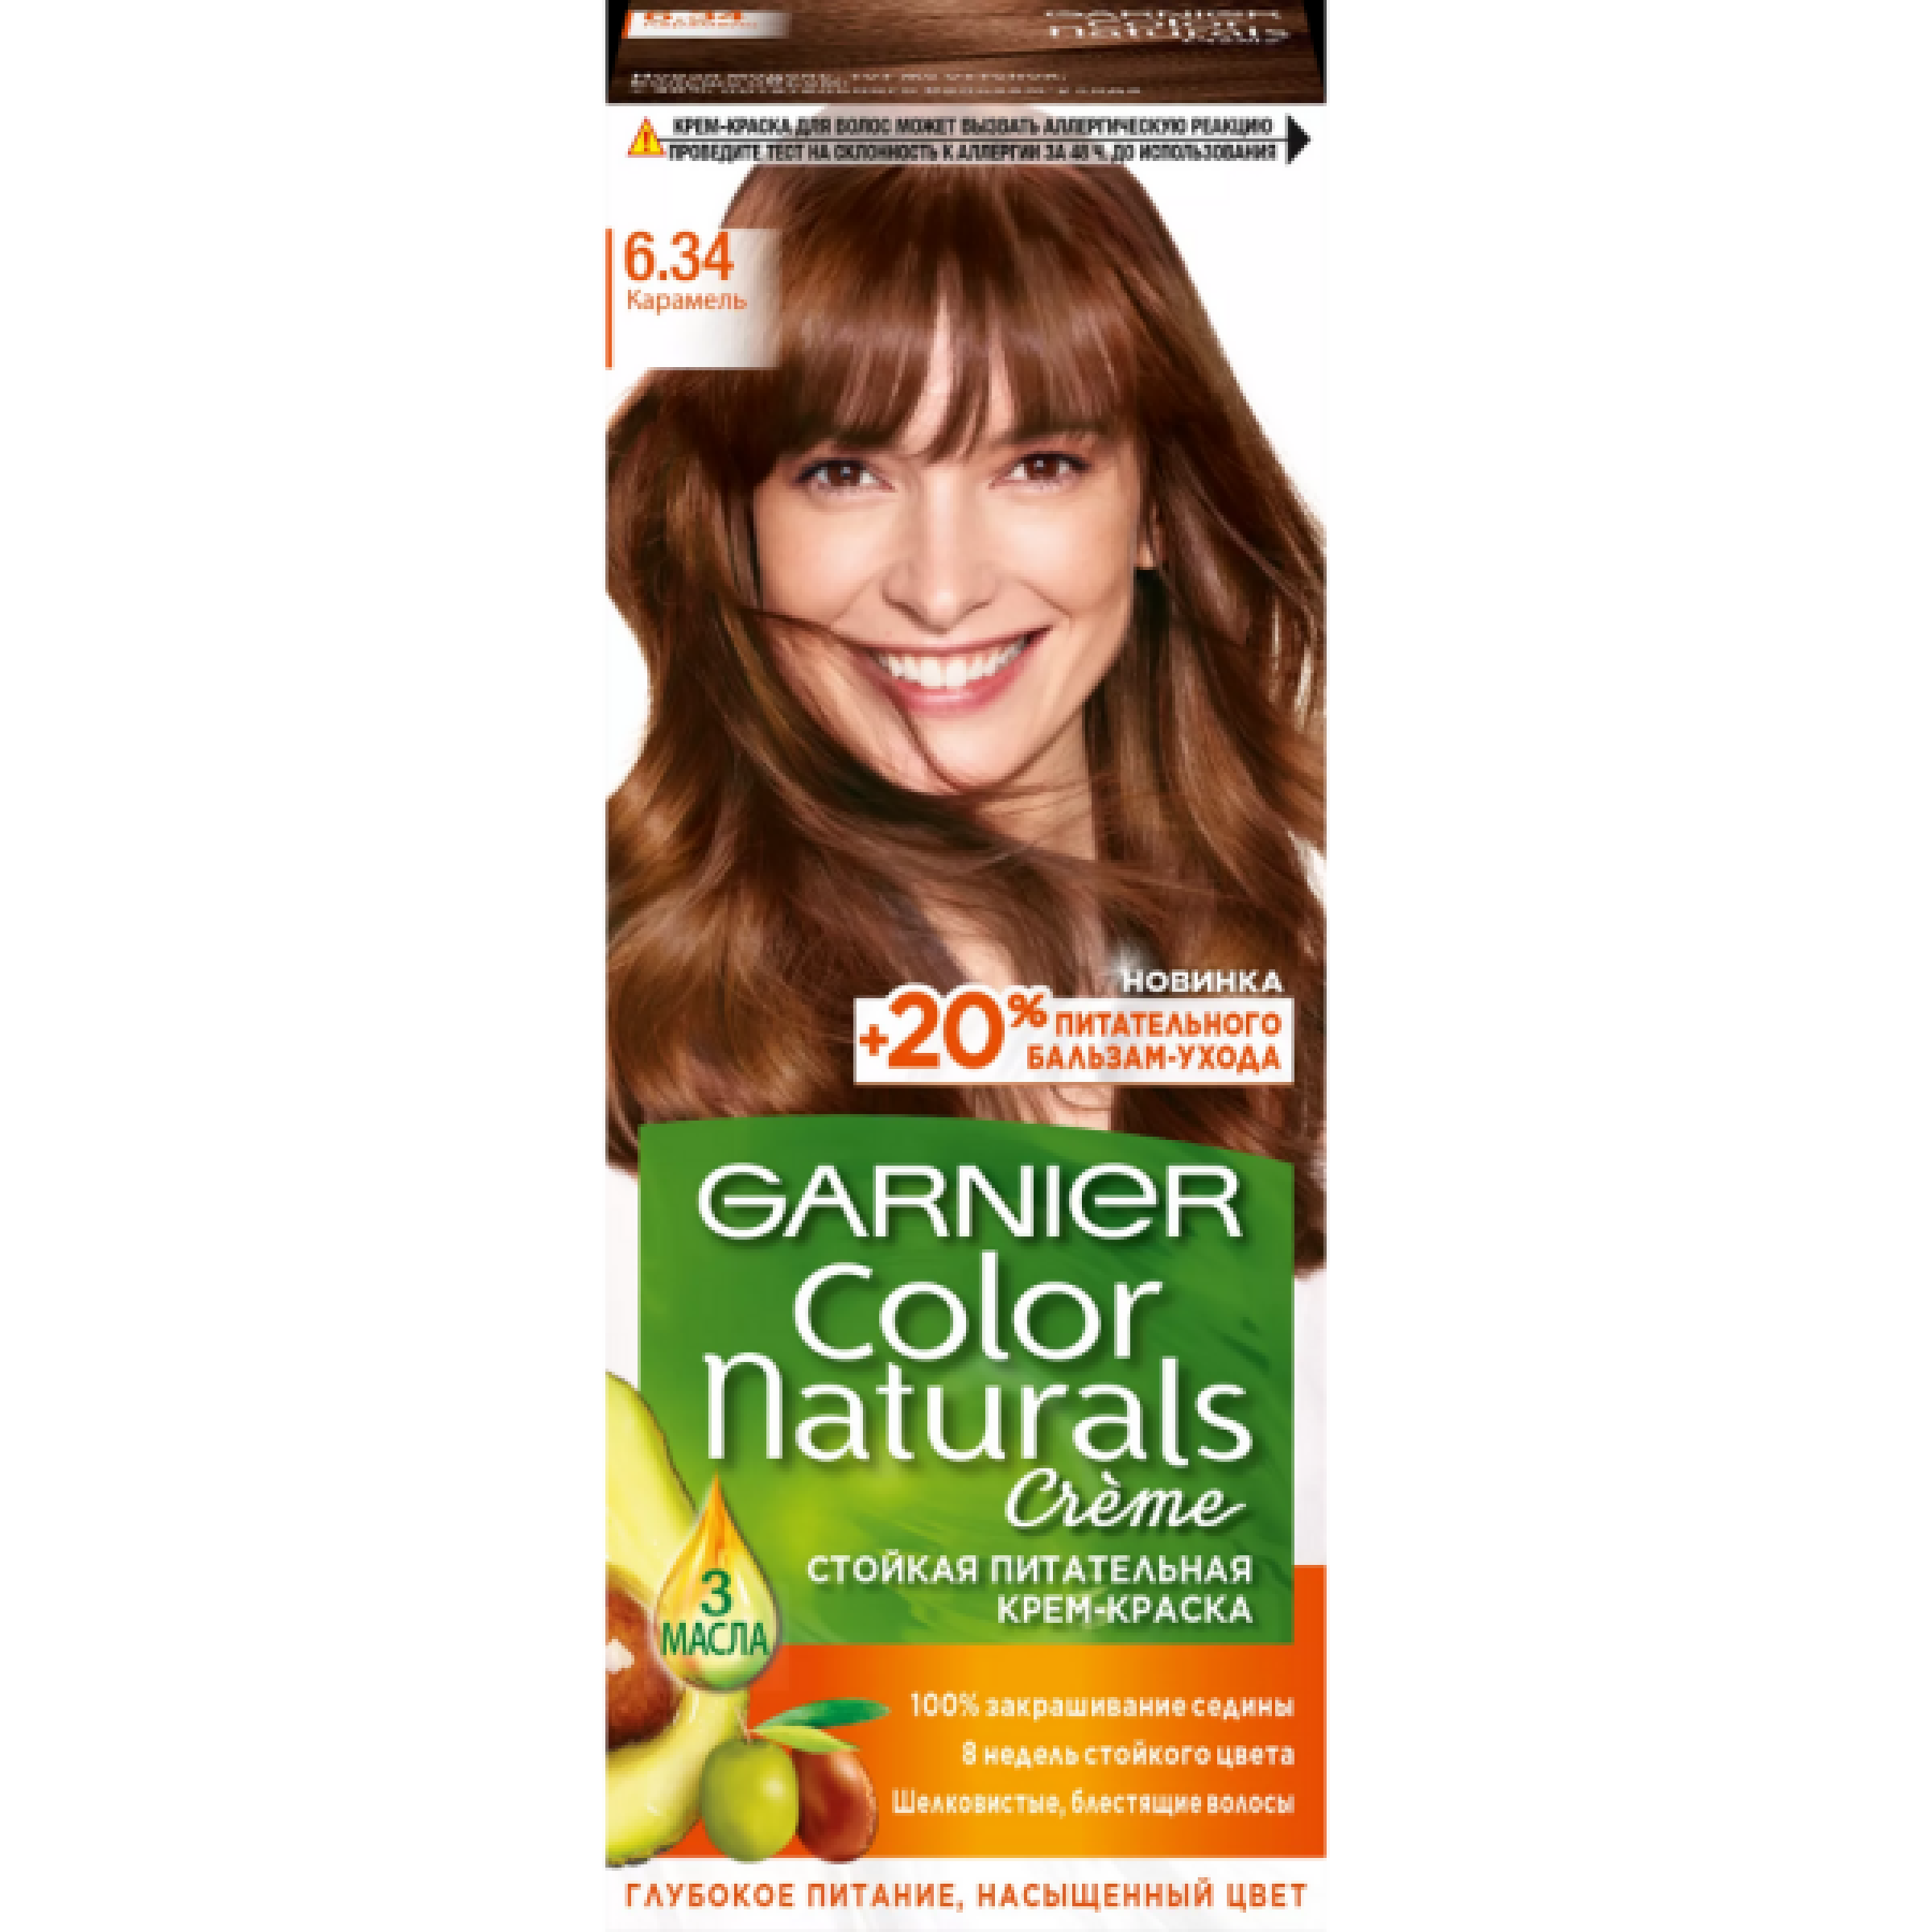 Стойкая крем-краска для волос Garnier Color Naturals тон 6.34 Карамель, 110 мл